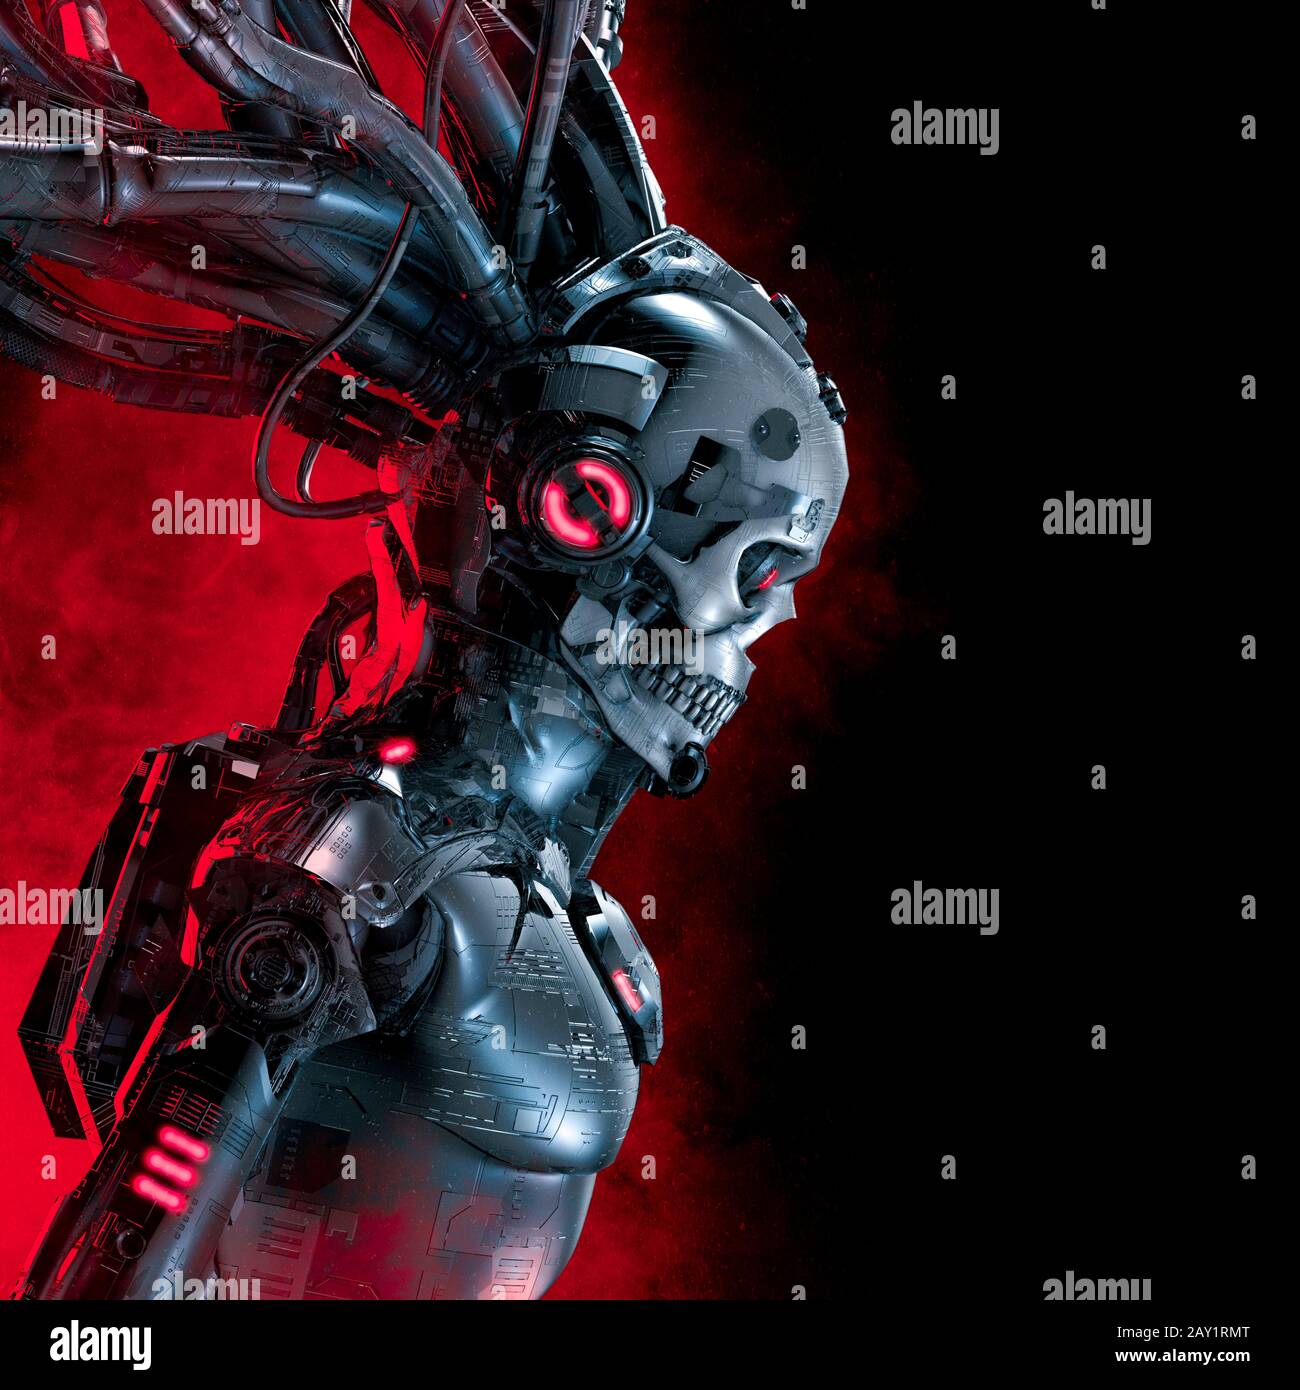 Reaper in der Nebel-/3D-Illustration des Cyber-Punk-Schädels von Science Fiction sah sich Robotersilhouetten ausgesetzt, die von glühendem rotem Rauch erzeugt wurden Stockfoto